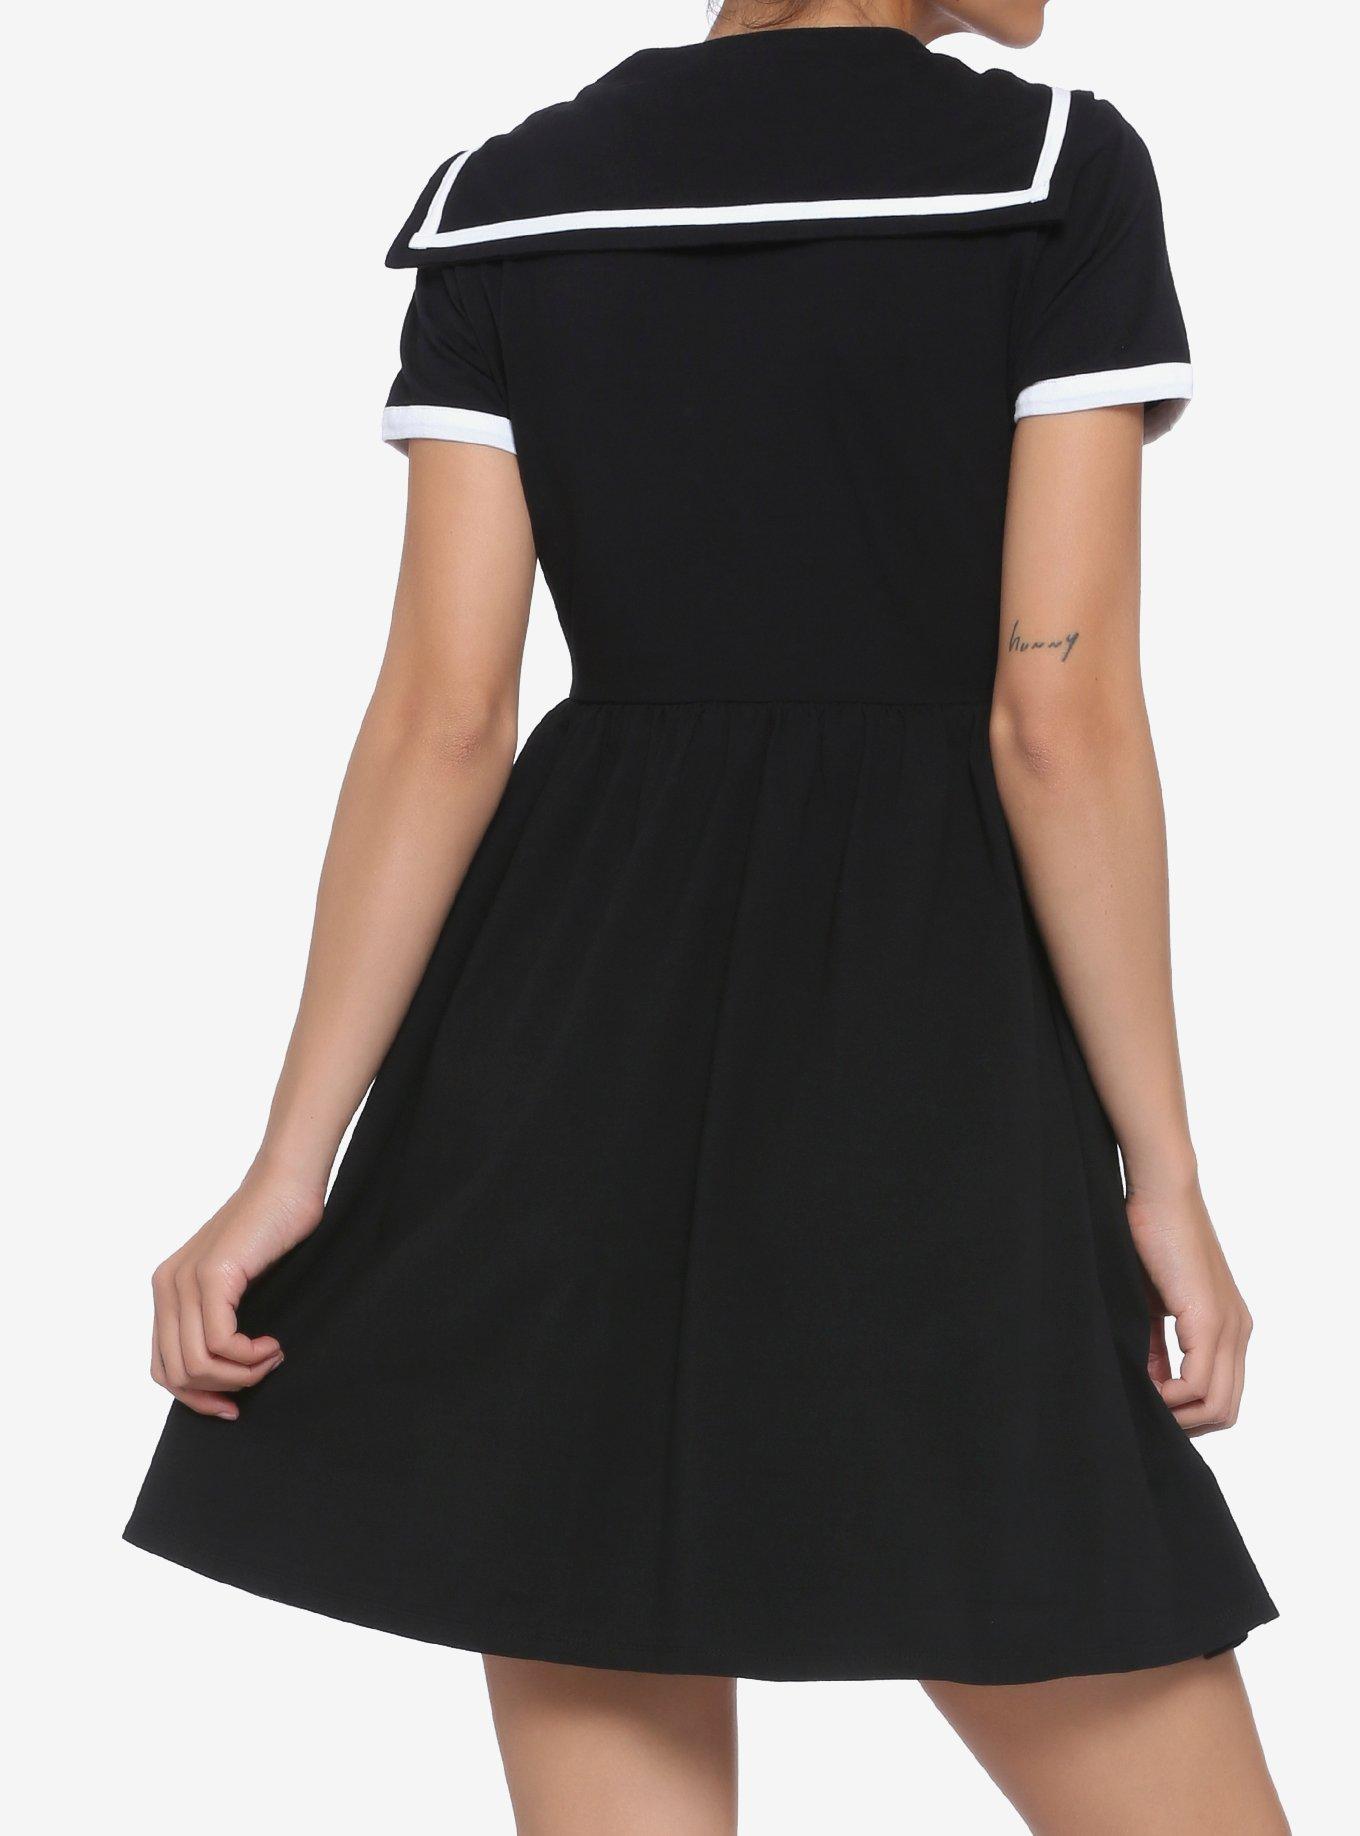 Black & White Sailor Skater Dress, BLACK  WHITE, alternate